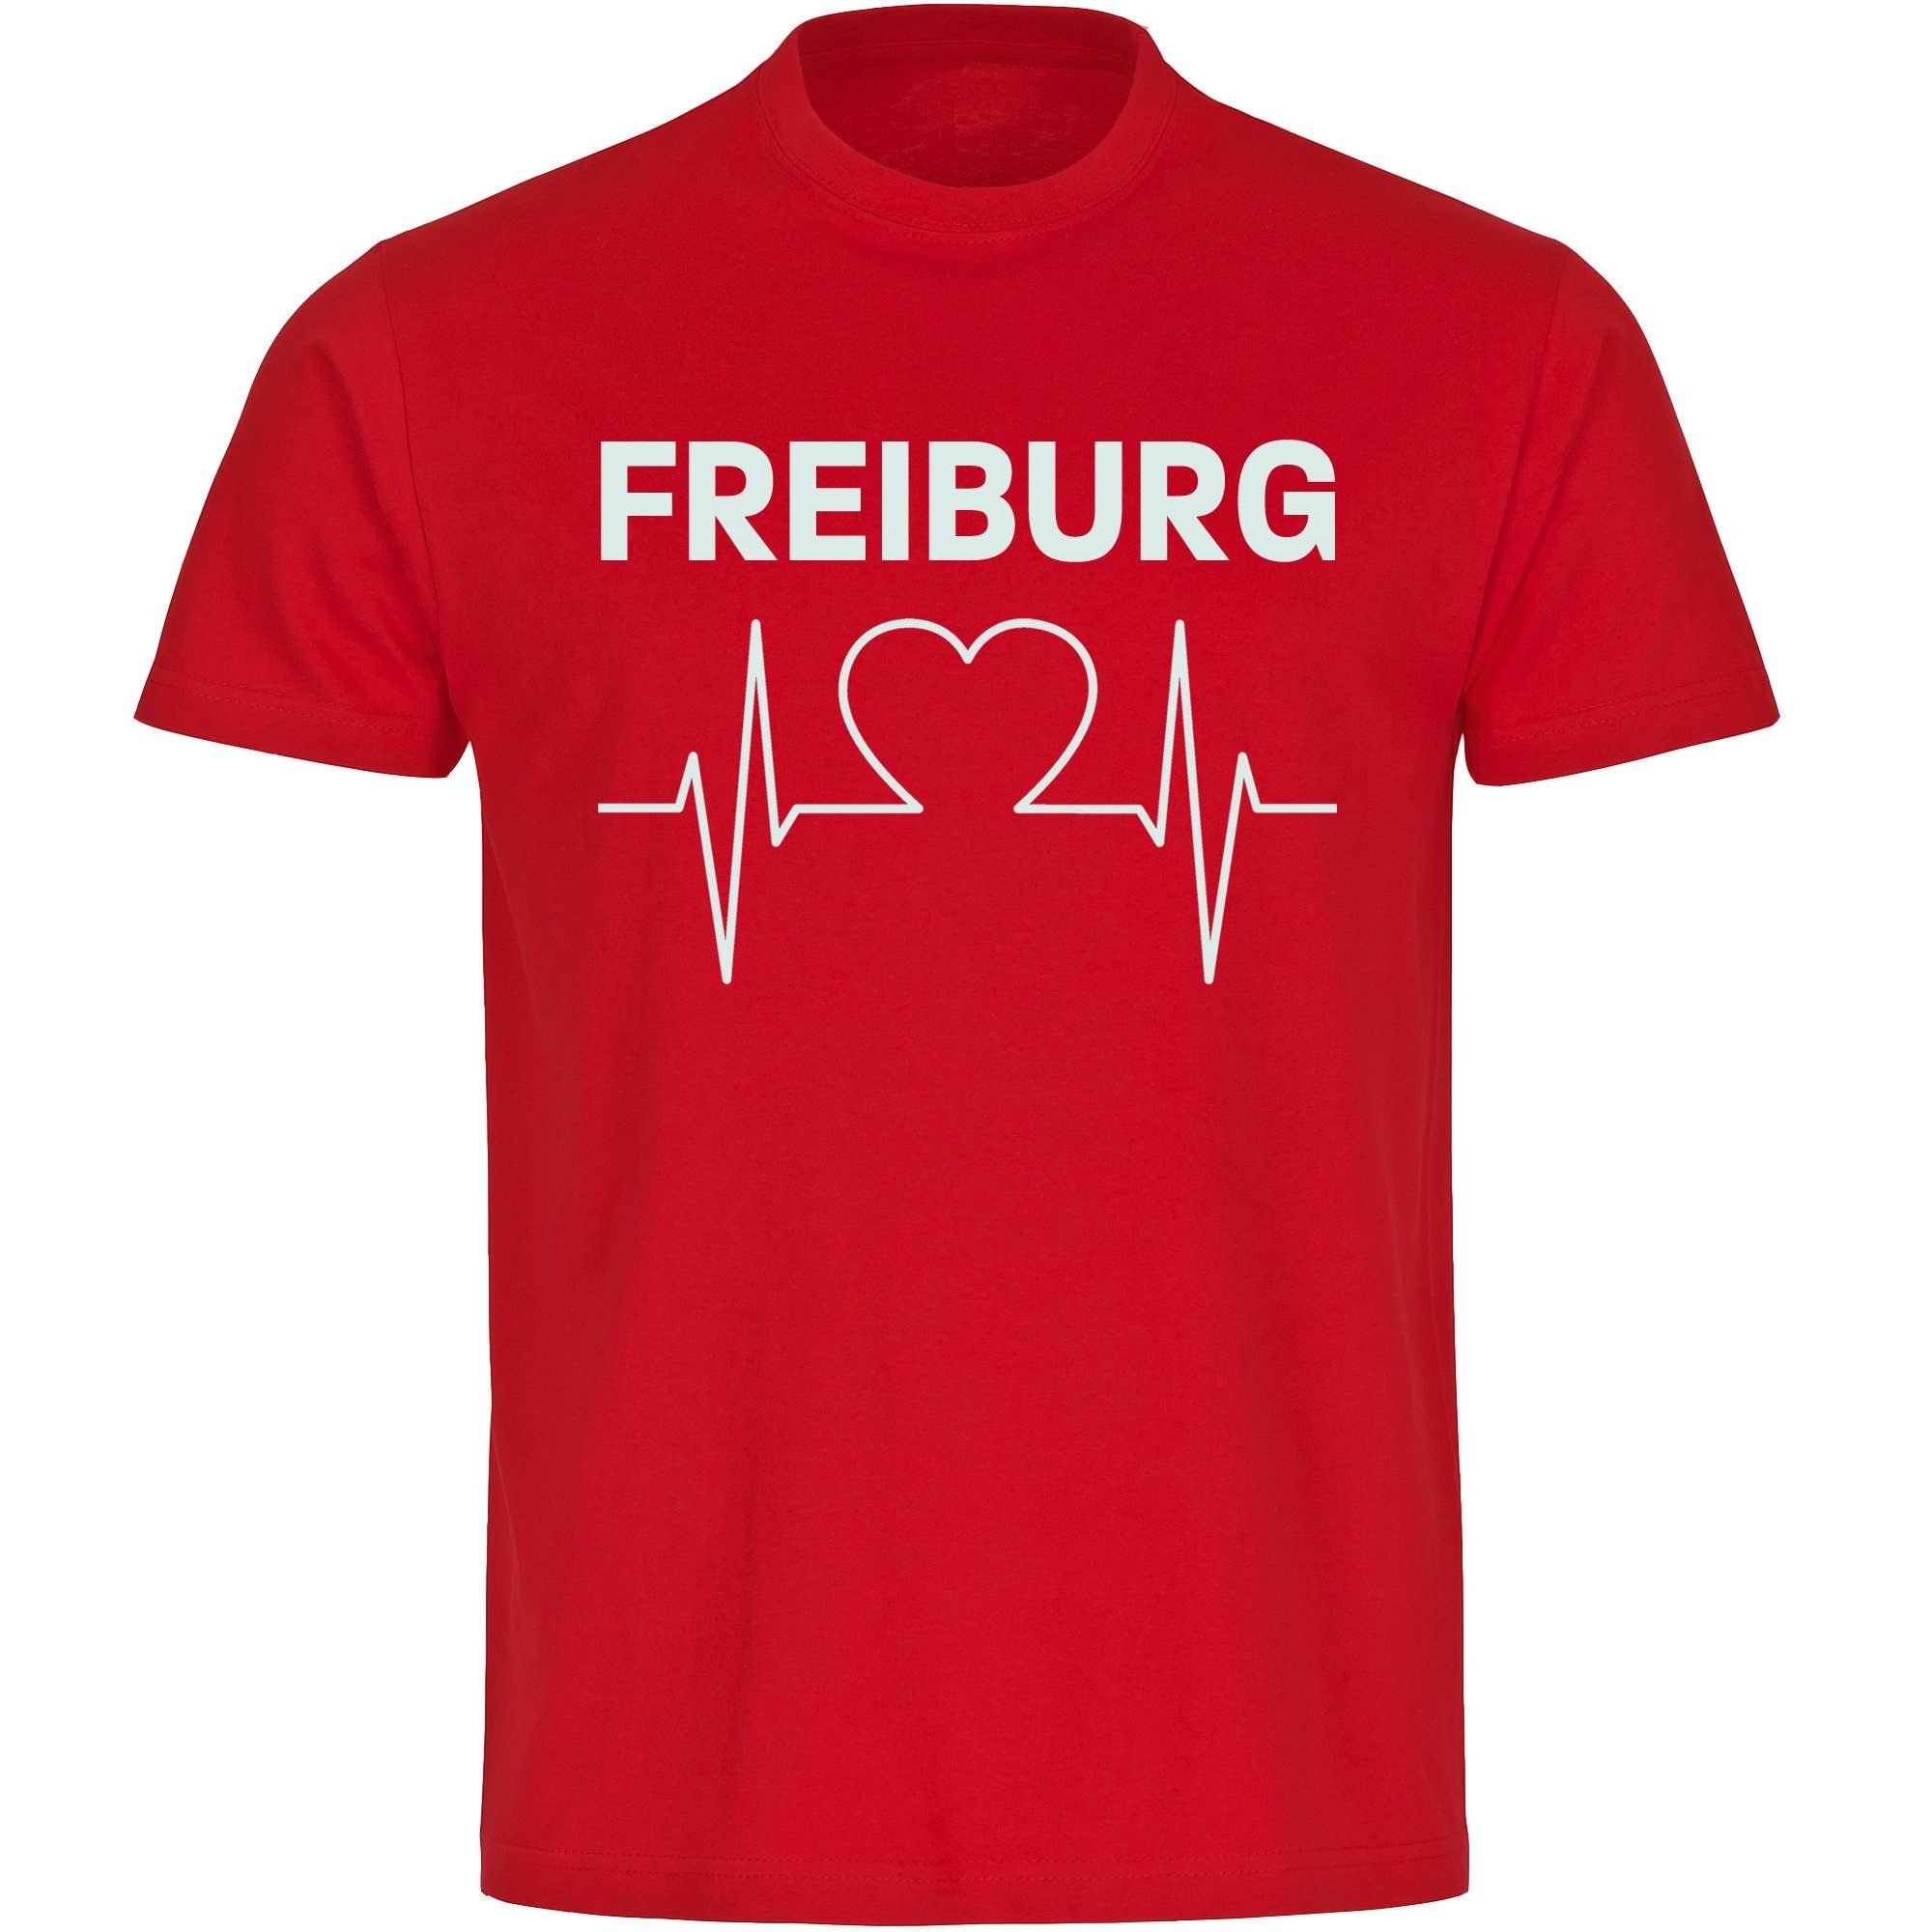 multifanshop T-Shirt Herren Freiburg - Herzschlag - Männer